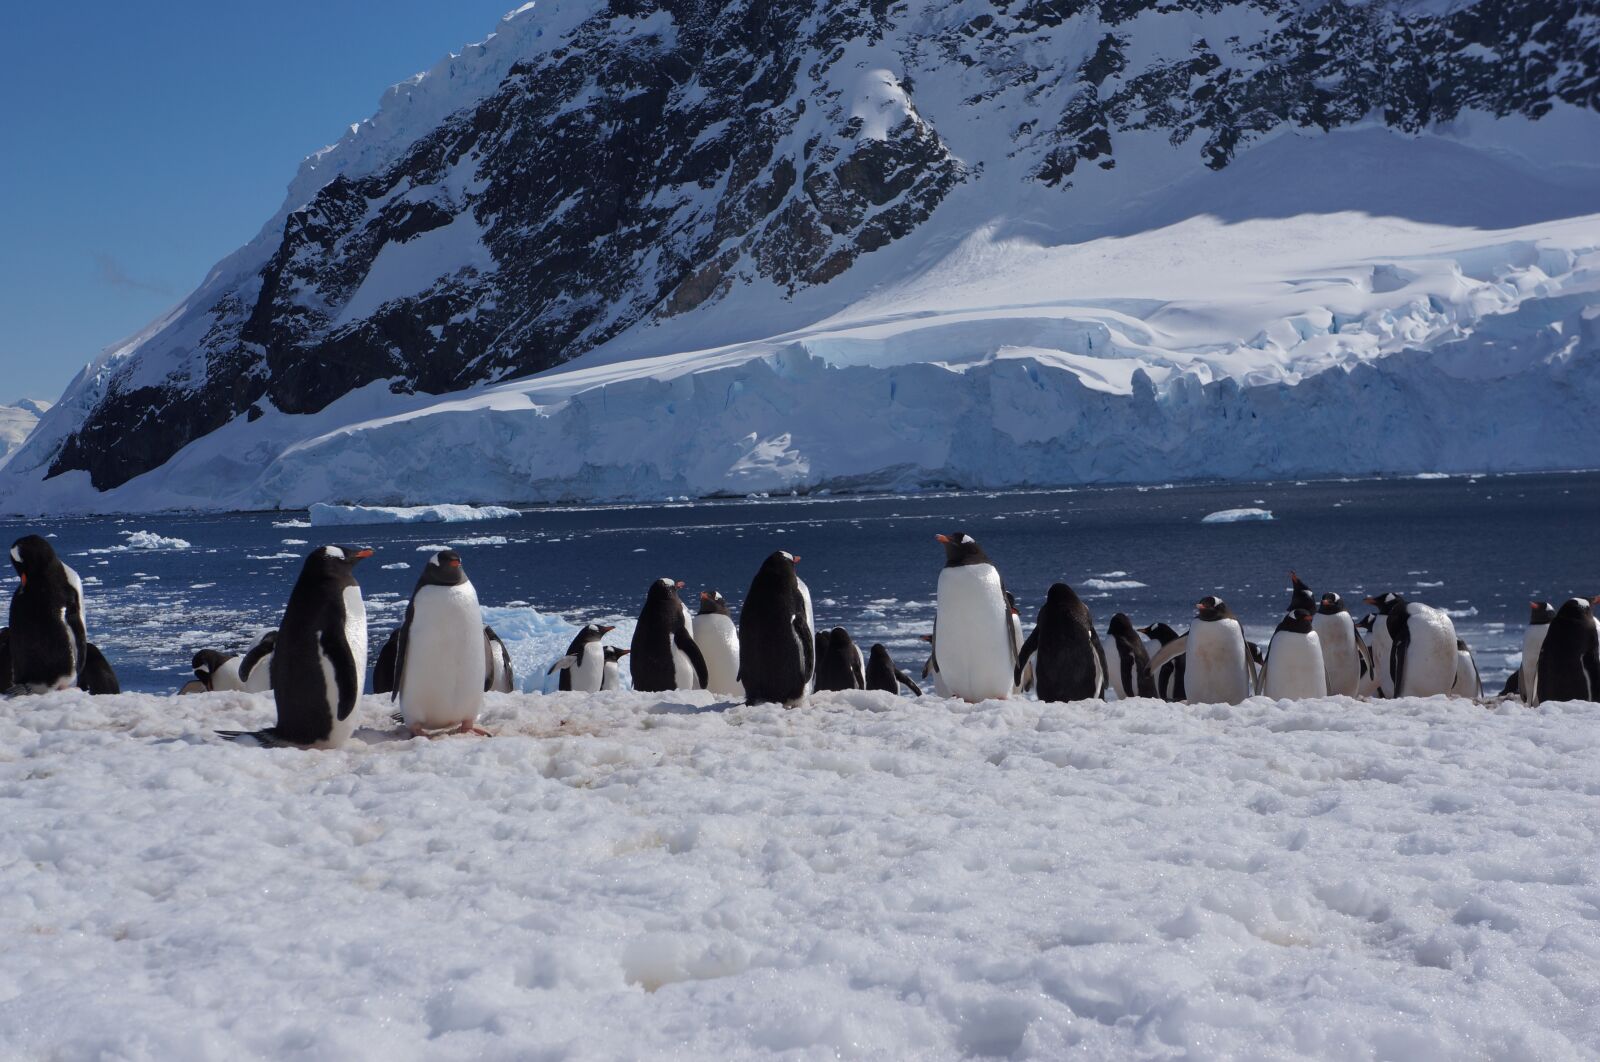 Sony Alpha NEX-5N + Sony E 18-55mm F3.5-5.6 OSS sample photo. Antarctica, glacier, penguin photography